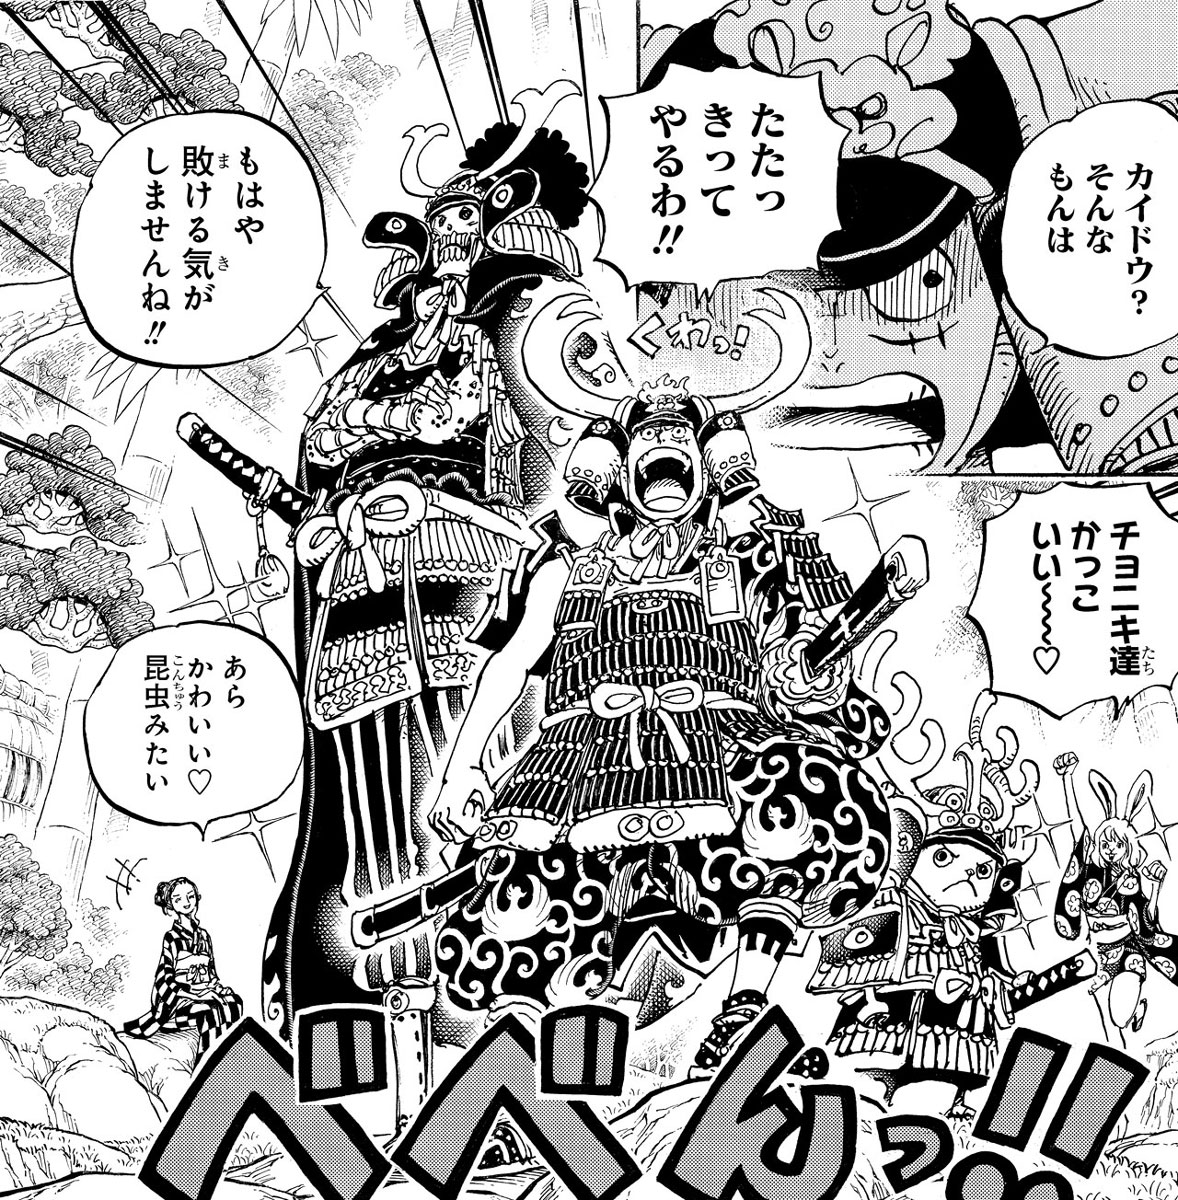 One Piece Com ワンピース ワノ国編 第三幕突入 アニメ One Piece 959話 約束の港 ワノ国編第三幕開幕 は 1月24日 日 朝9 30より放送 討ち入りに向かう鎧姿の ルフィたちがアニメに登場 お楽しみに 地域により放送日時が異なります